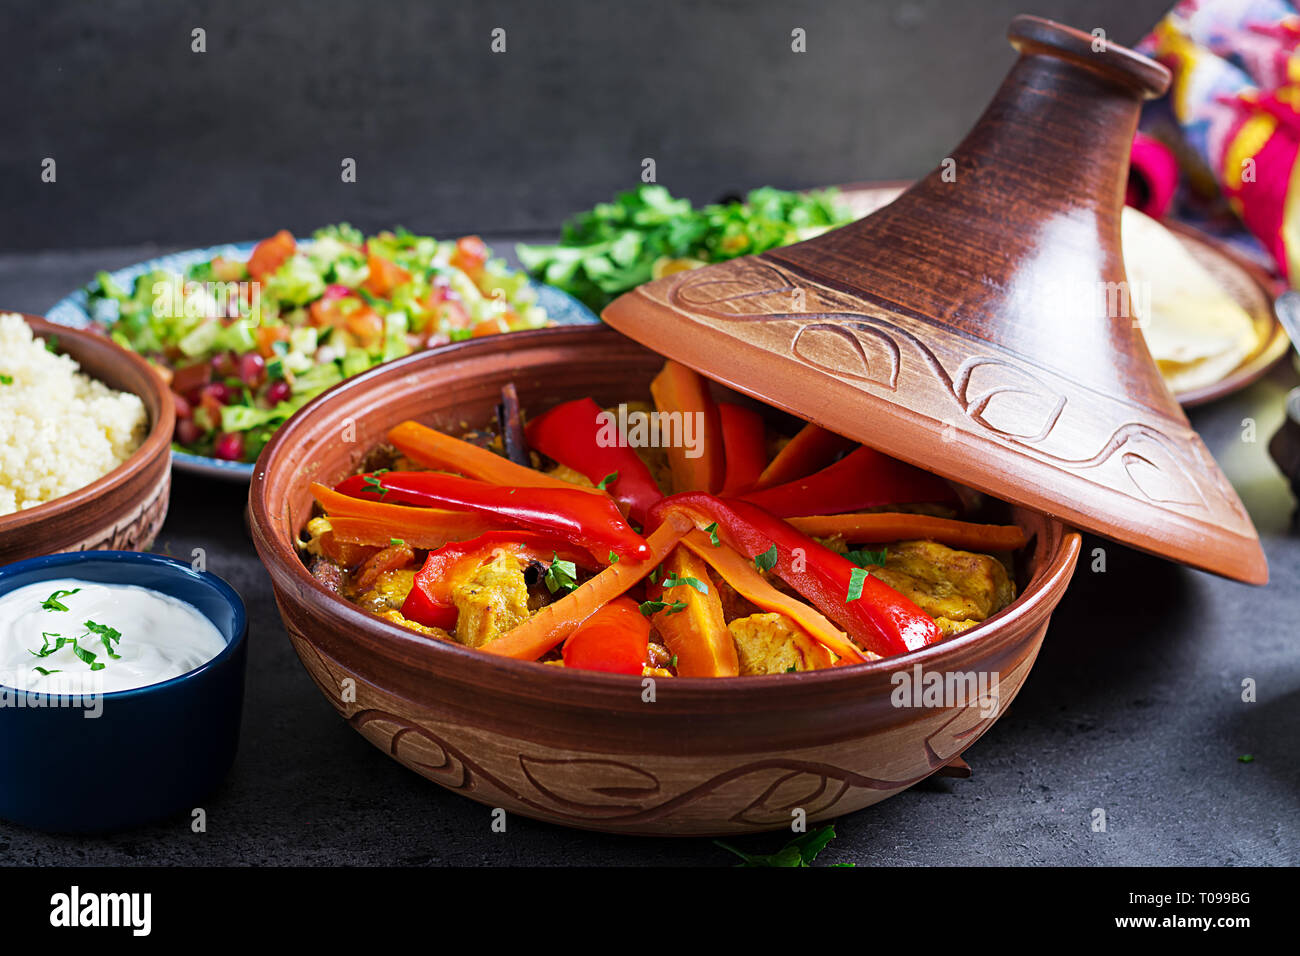 Marokkanisches Essen. Traditionelle tajine Gerichte, Couscous und frischen Salat auf rustikalen Holztisch. Tajine Hähnchen Fleisch und Gemüse. Arabische Küche. Stockfoto